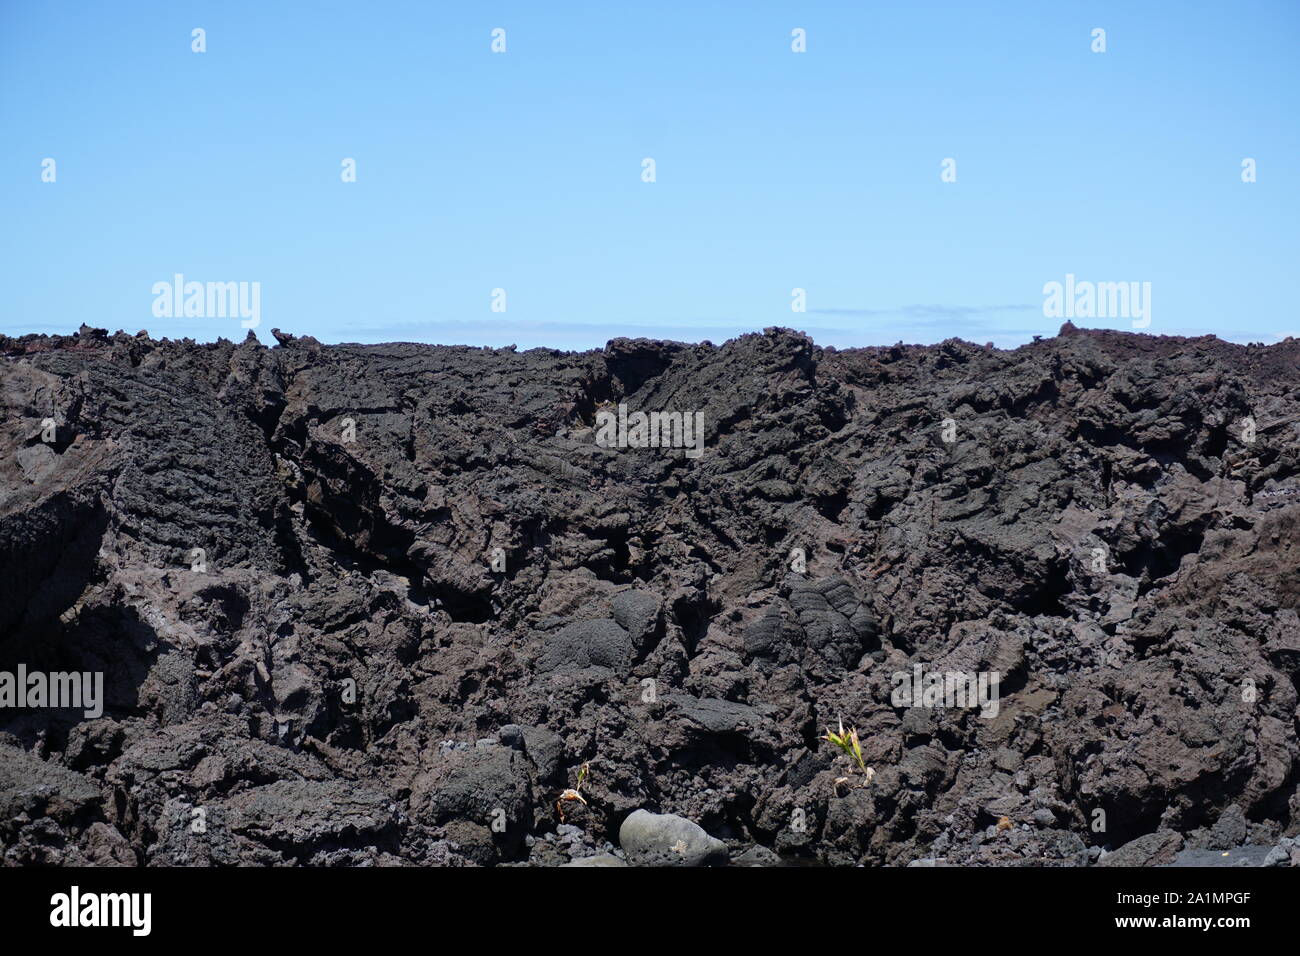 Plage de sable noir de Pohoiki dans le parc de la plage d'Isaac Hale à Hawaï - la plus récente plage d'Hawaï, créée par les éruptions de 2018 de Kilauea. Banque D'Images